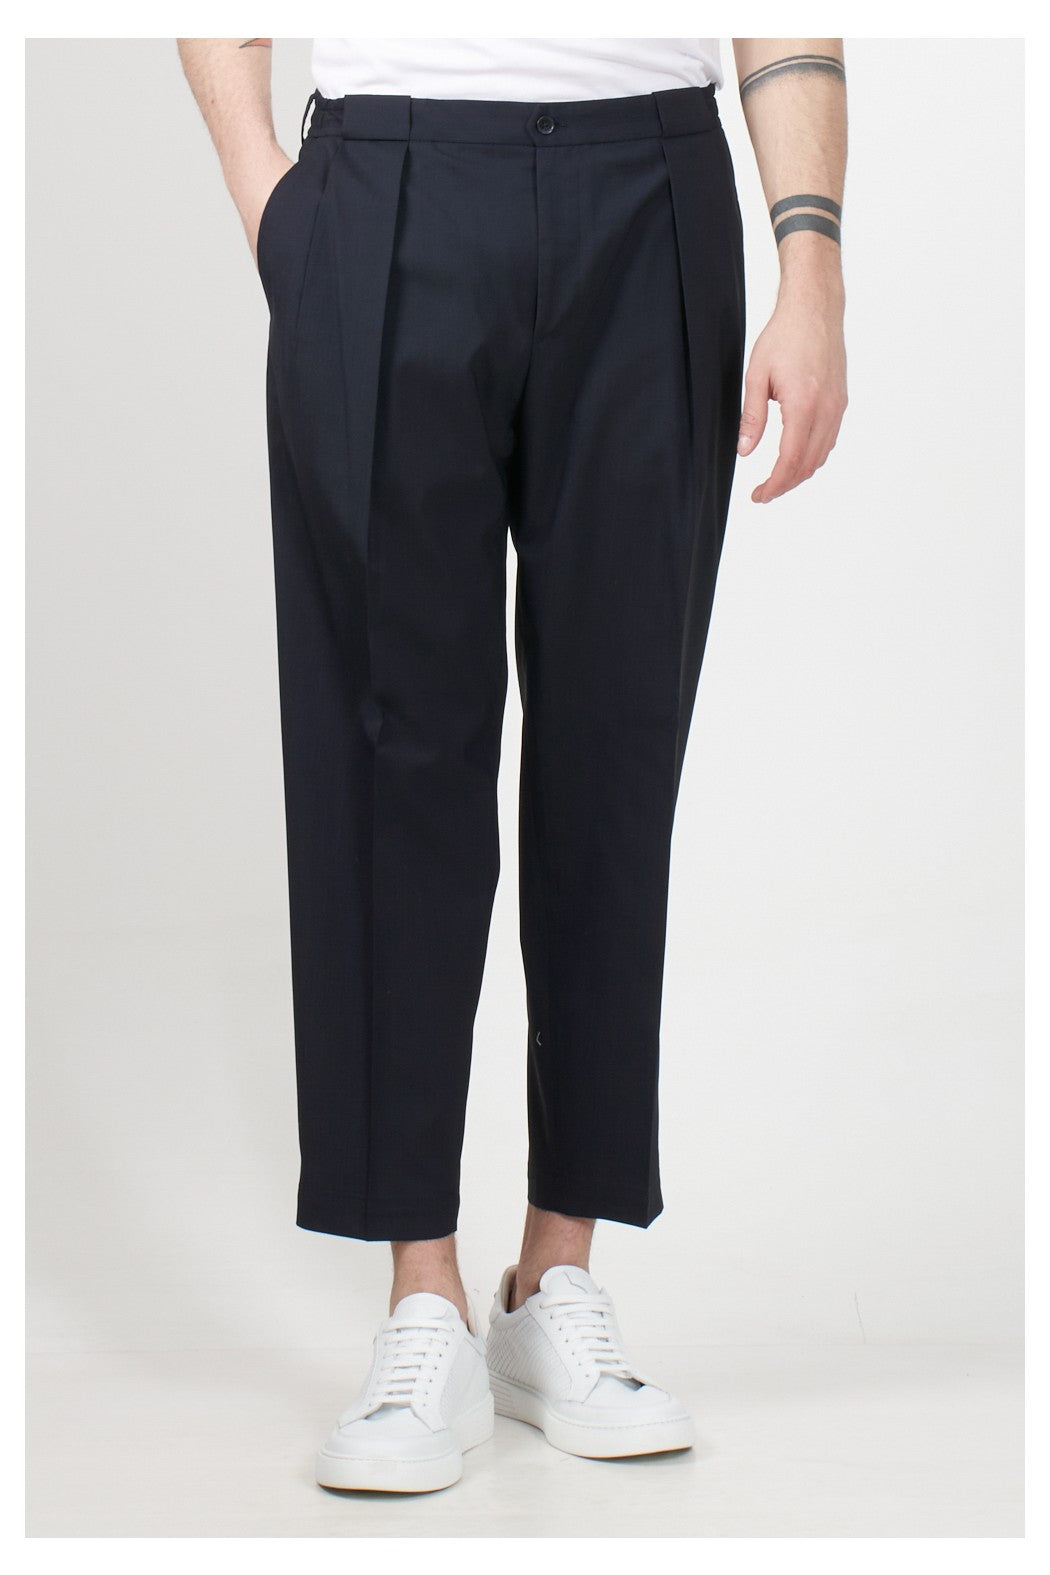 Pantalone Modello Portobello / Blu - Ideal Moda